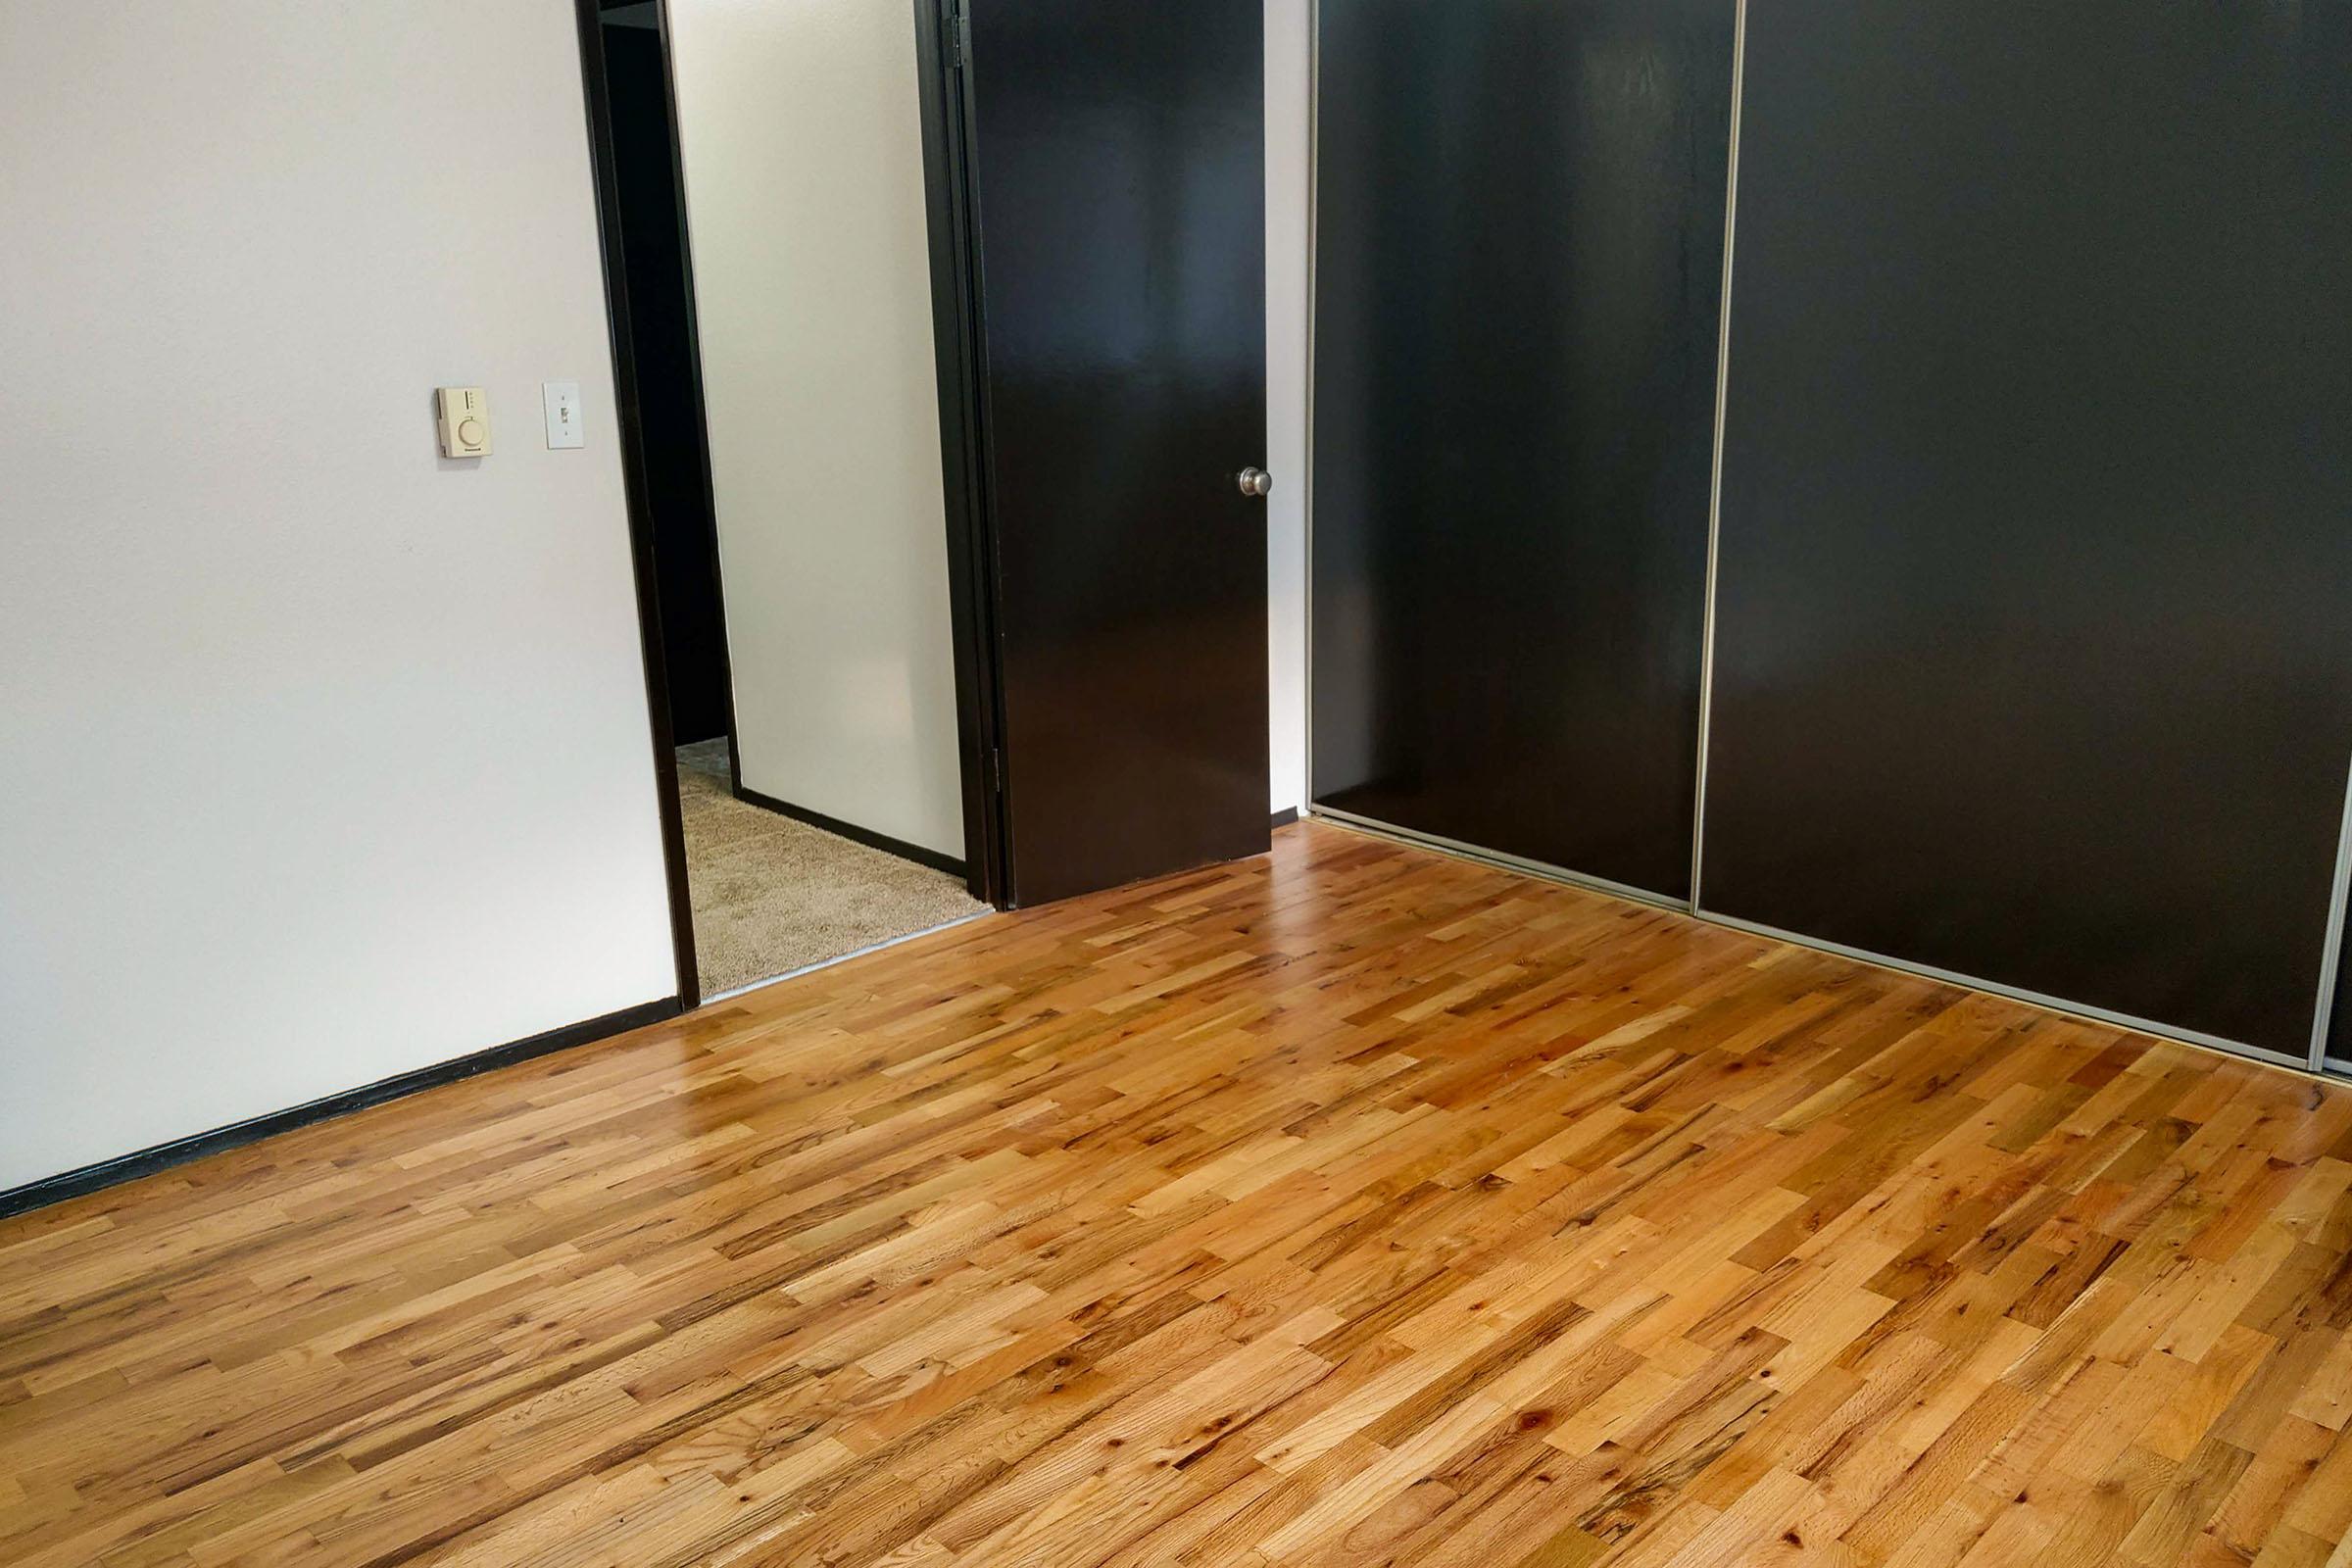 a wooden floor